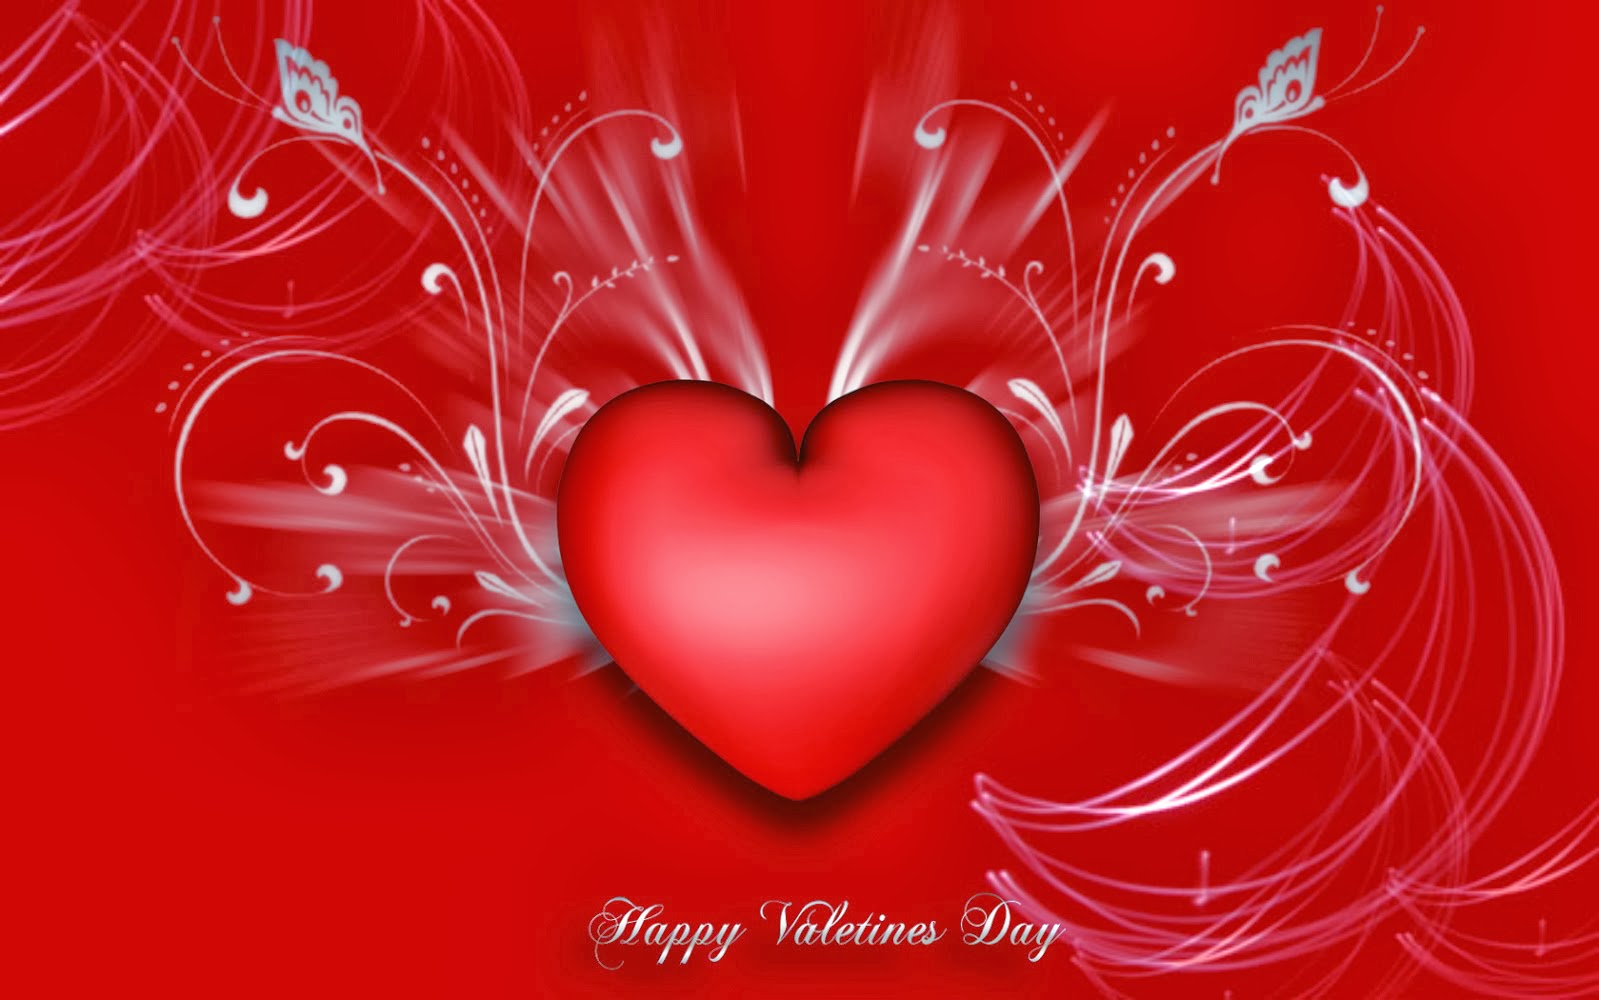 バレンタインデー特別壁紙,心臓,赤,バレンタイン・デー,愛,心臓